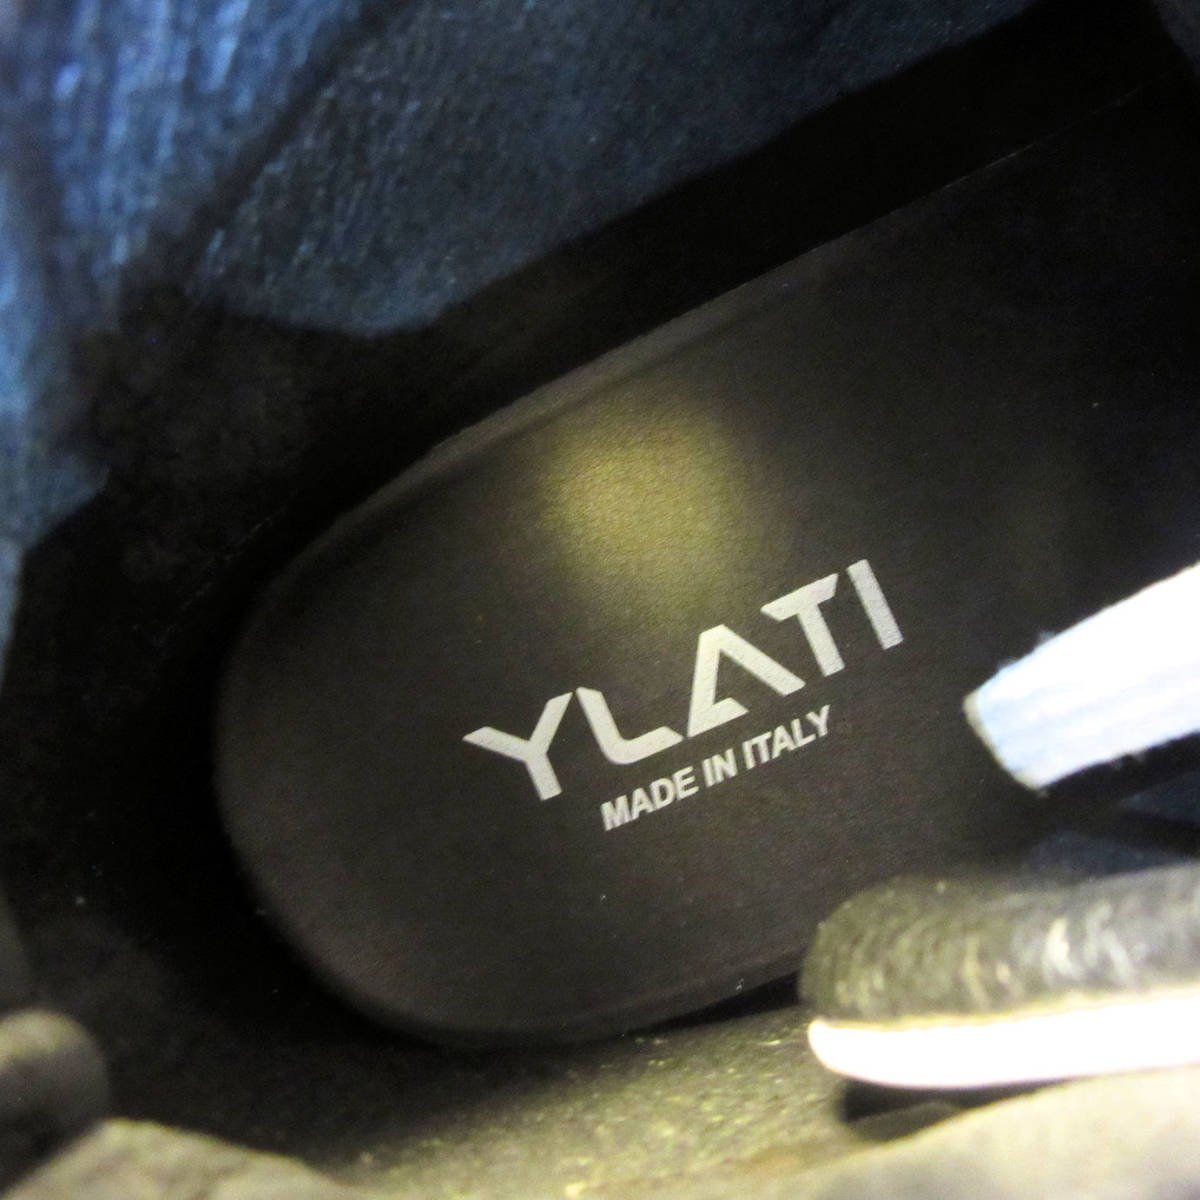  новый товар не использовался YLATIilati Италия производства GUCCI. работник по причине бренд кожа спортивные туфли - ikatto обувь мужской белый 40 25cm